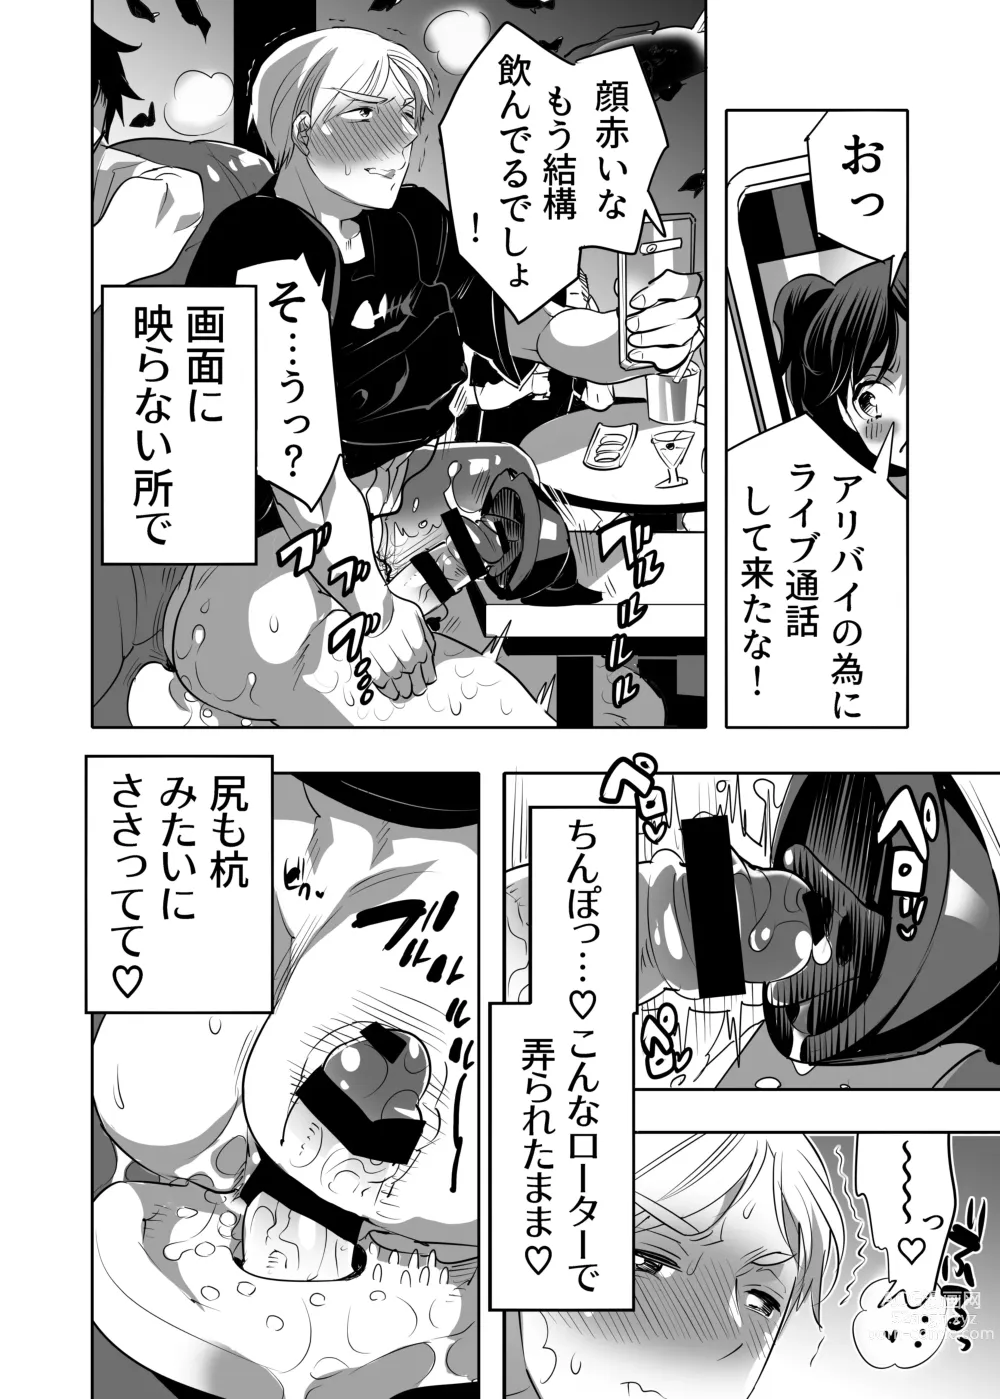 Page 46 of manga Abuso OK Prisionero Niño